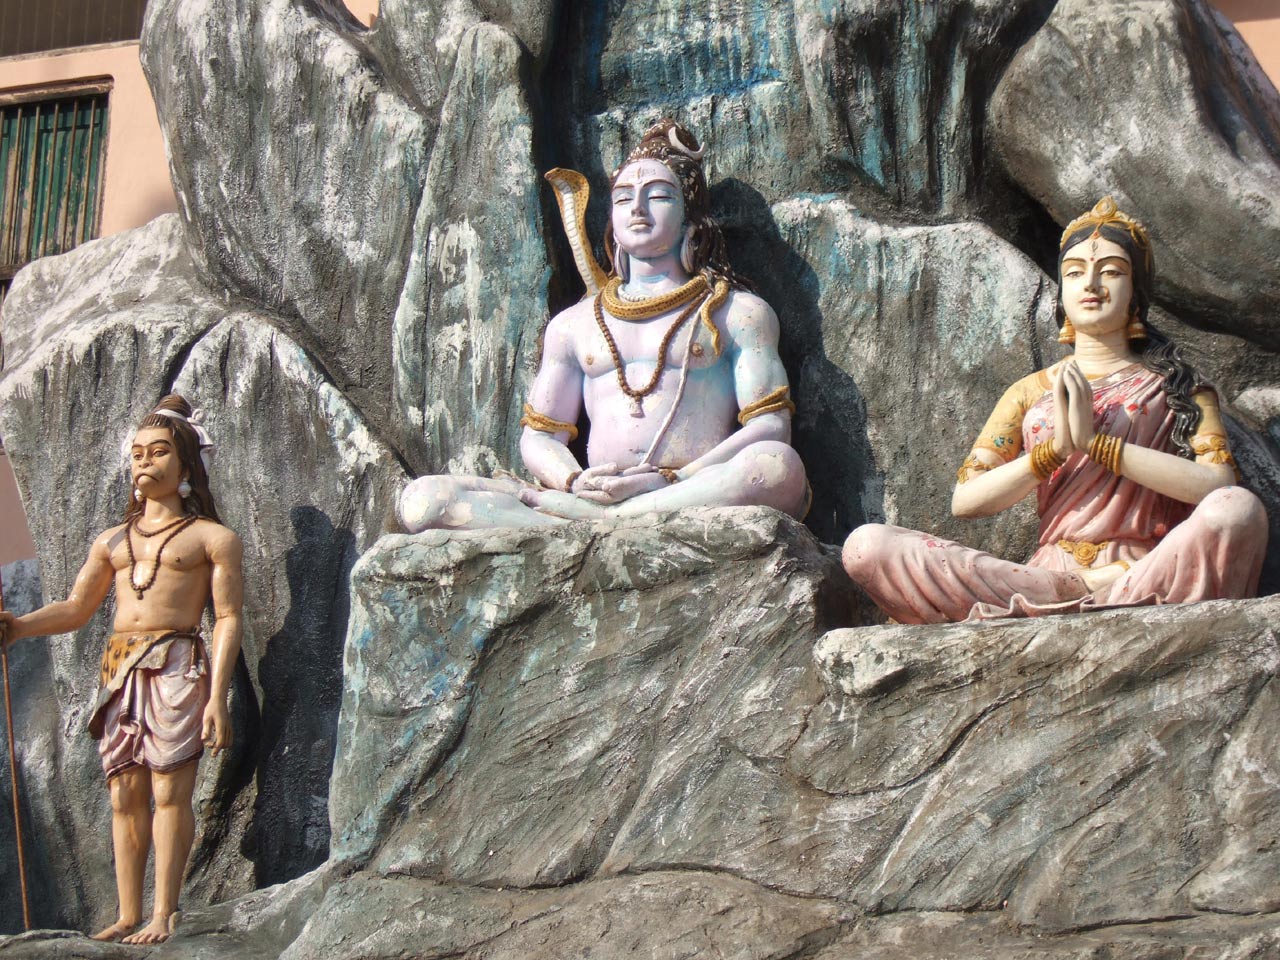 https://blogger.googleusercontent.com/img/b/R29vZ2xl/AVvXsEgYeq_eWsb173vPtcI0d52sRhZtSXGHB5UmEGPEBAa9xtqcHSqhOXn0oImKqph1cZkJelNVIKgrm6J6dmq82ELStQSgU1YiZB921a6Hu9a4JmGBkI0kijwcsyD8oEEV1oTZPE6fS7kM32AQ/s1600/rishikesh-temple-of-hindu-god-at-india-pictures-collection.jpg